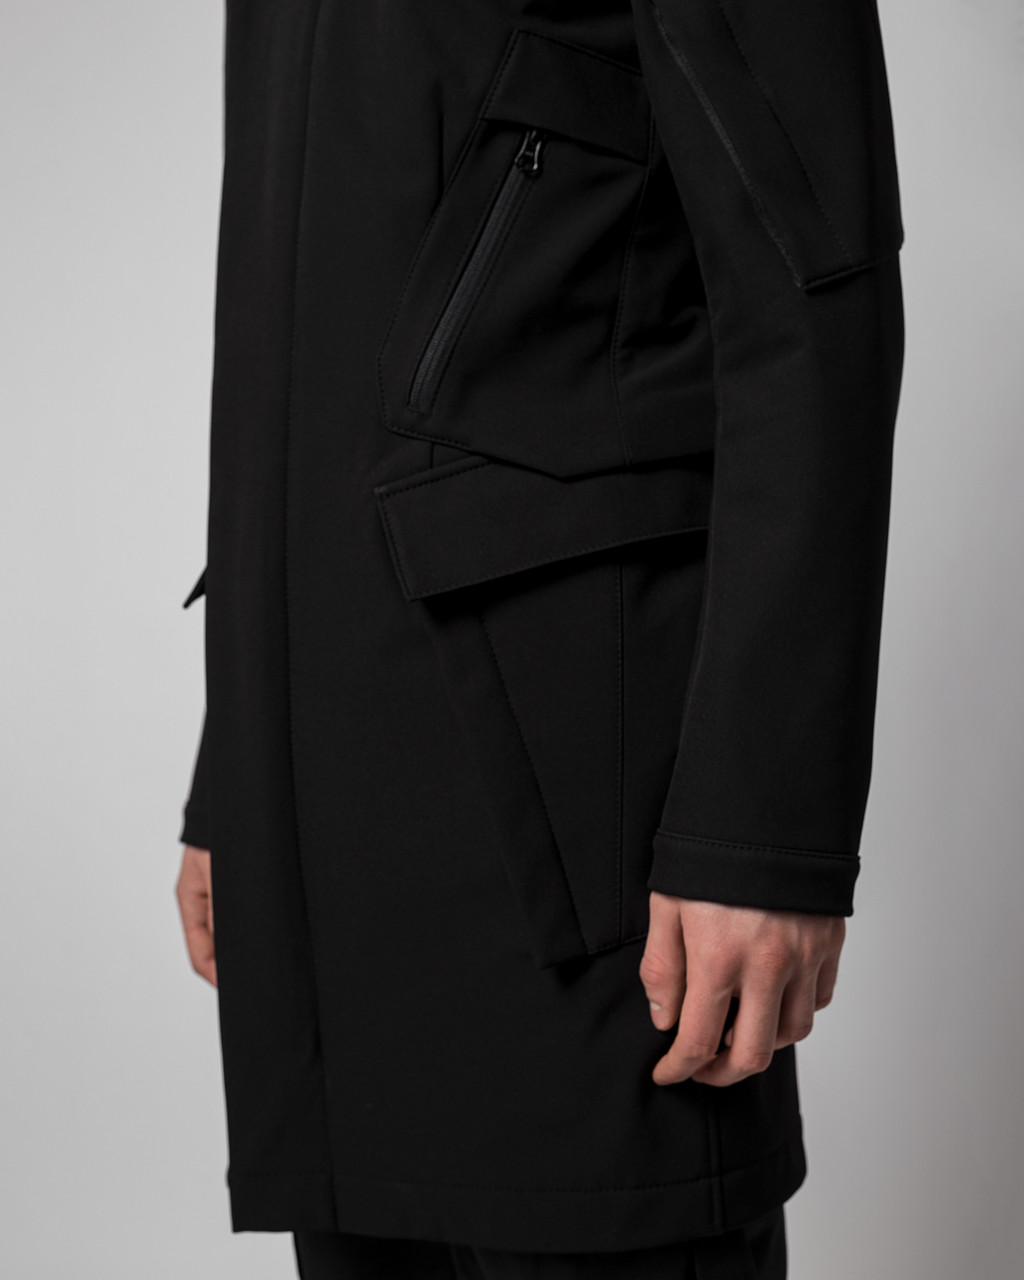 Плащ пальто из Softshell бренд ТУР модель Yakuza (Якудза) TURWEAR - Фото 2